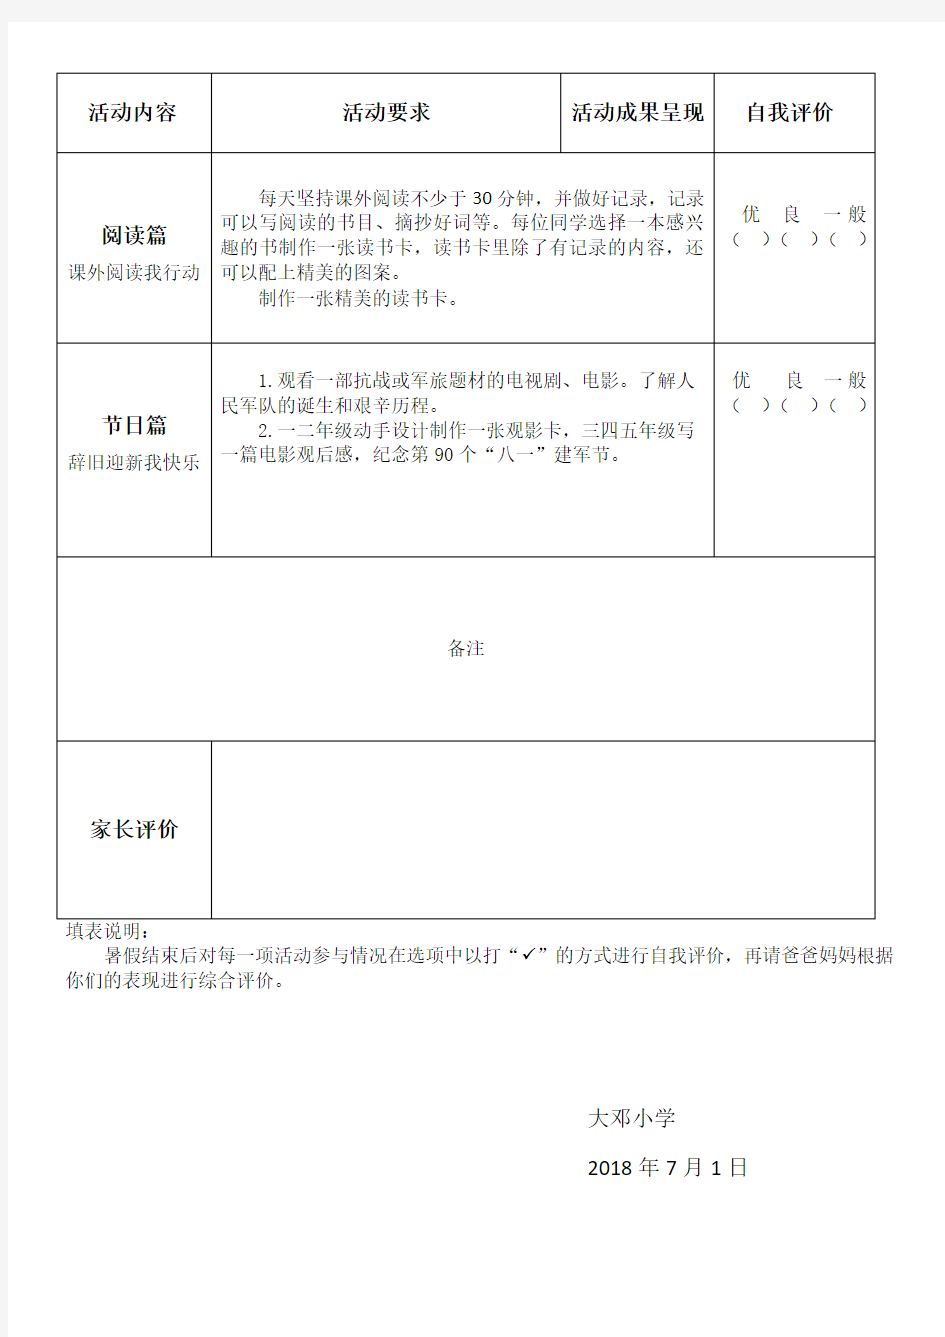 大邓小学暑假综合实践作业(打印版)